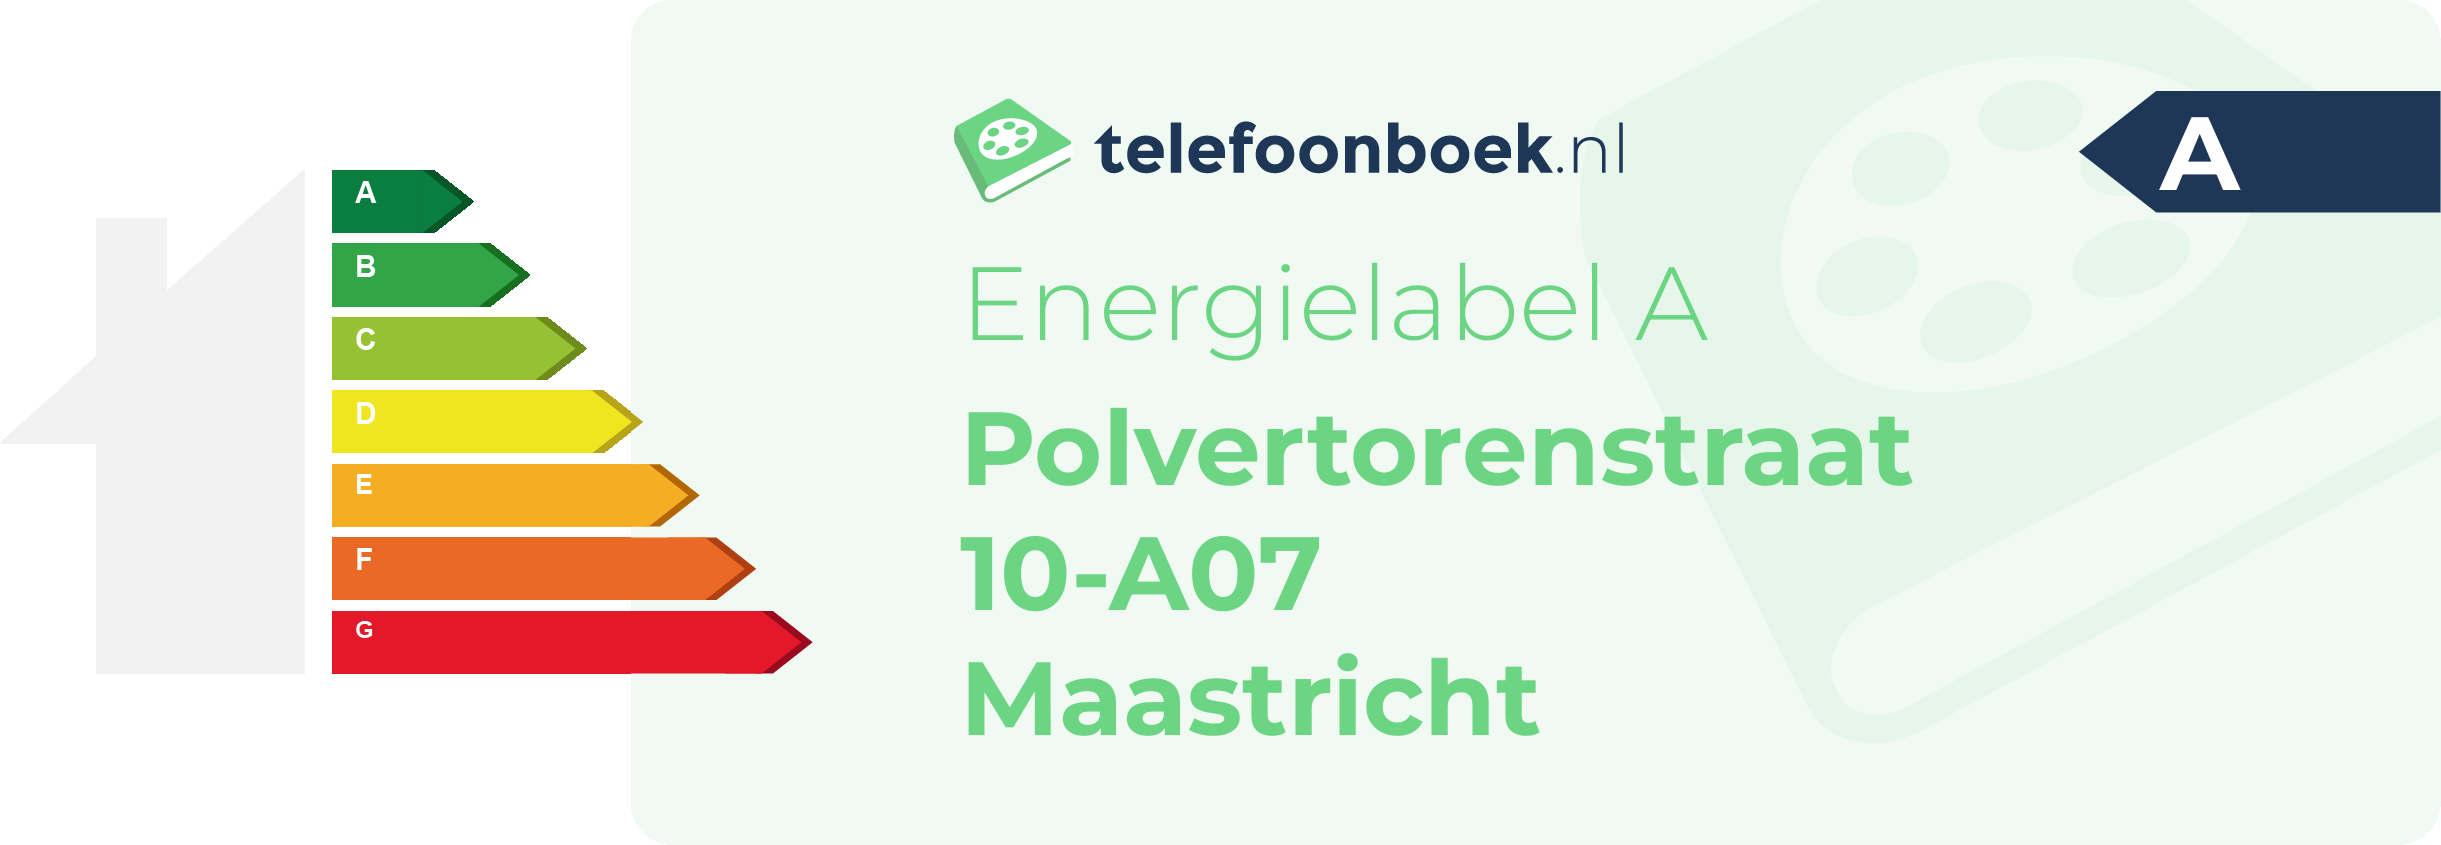 Energielabel Polvertorenstraat 10-A07 Maastricht